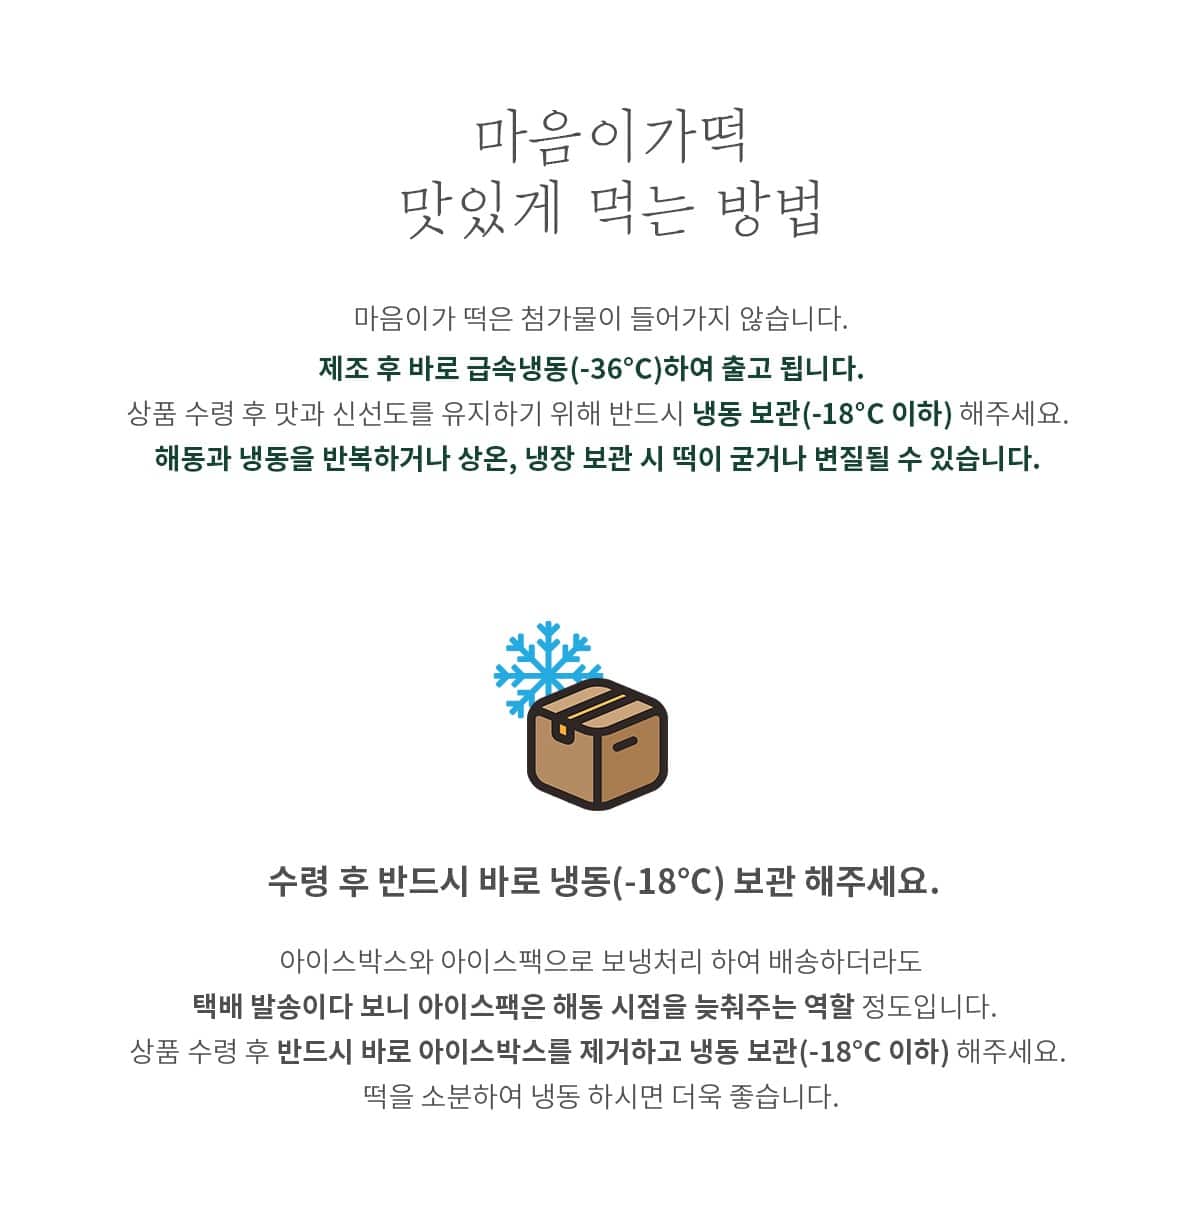 韓國食品-[Maumiga] Happy No.1 韓國傳統年糕禮盒套裝 (29/1起以訂貨先後順序安排送貨)